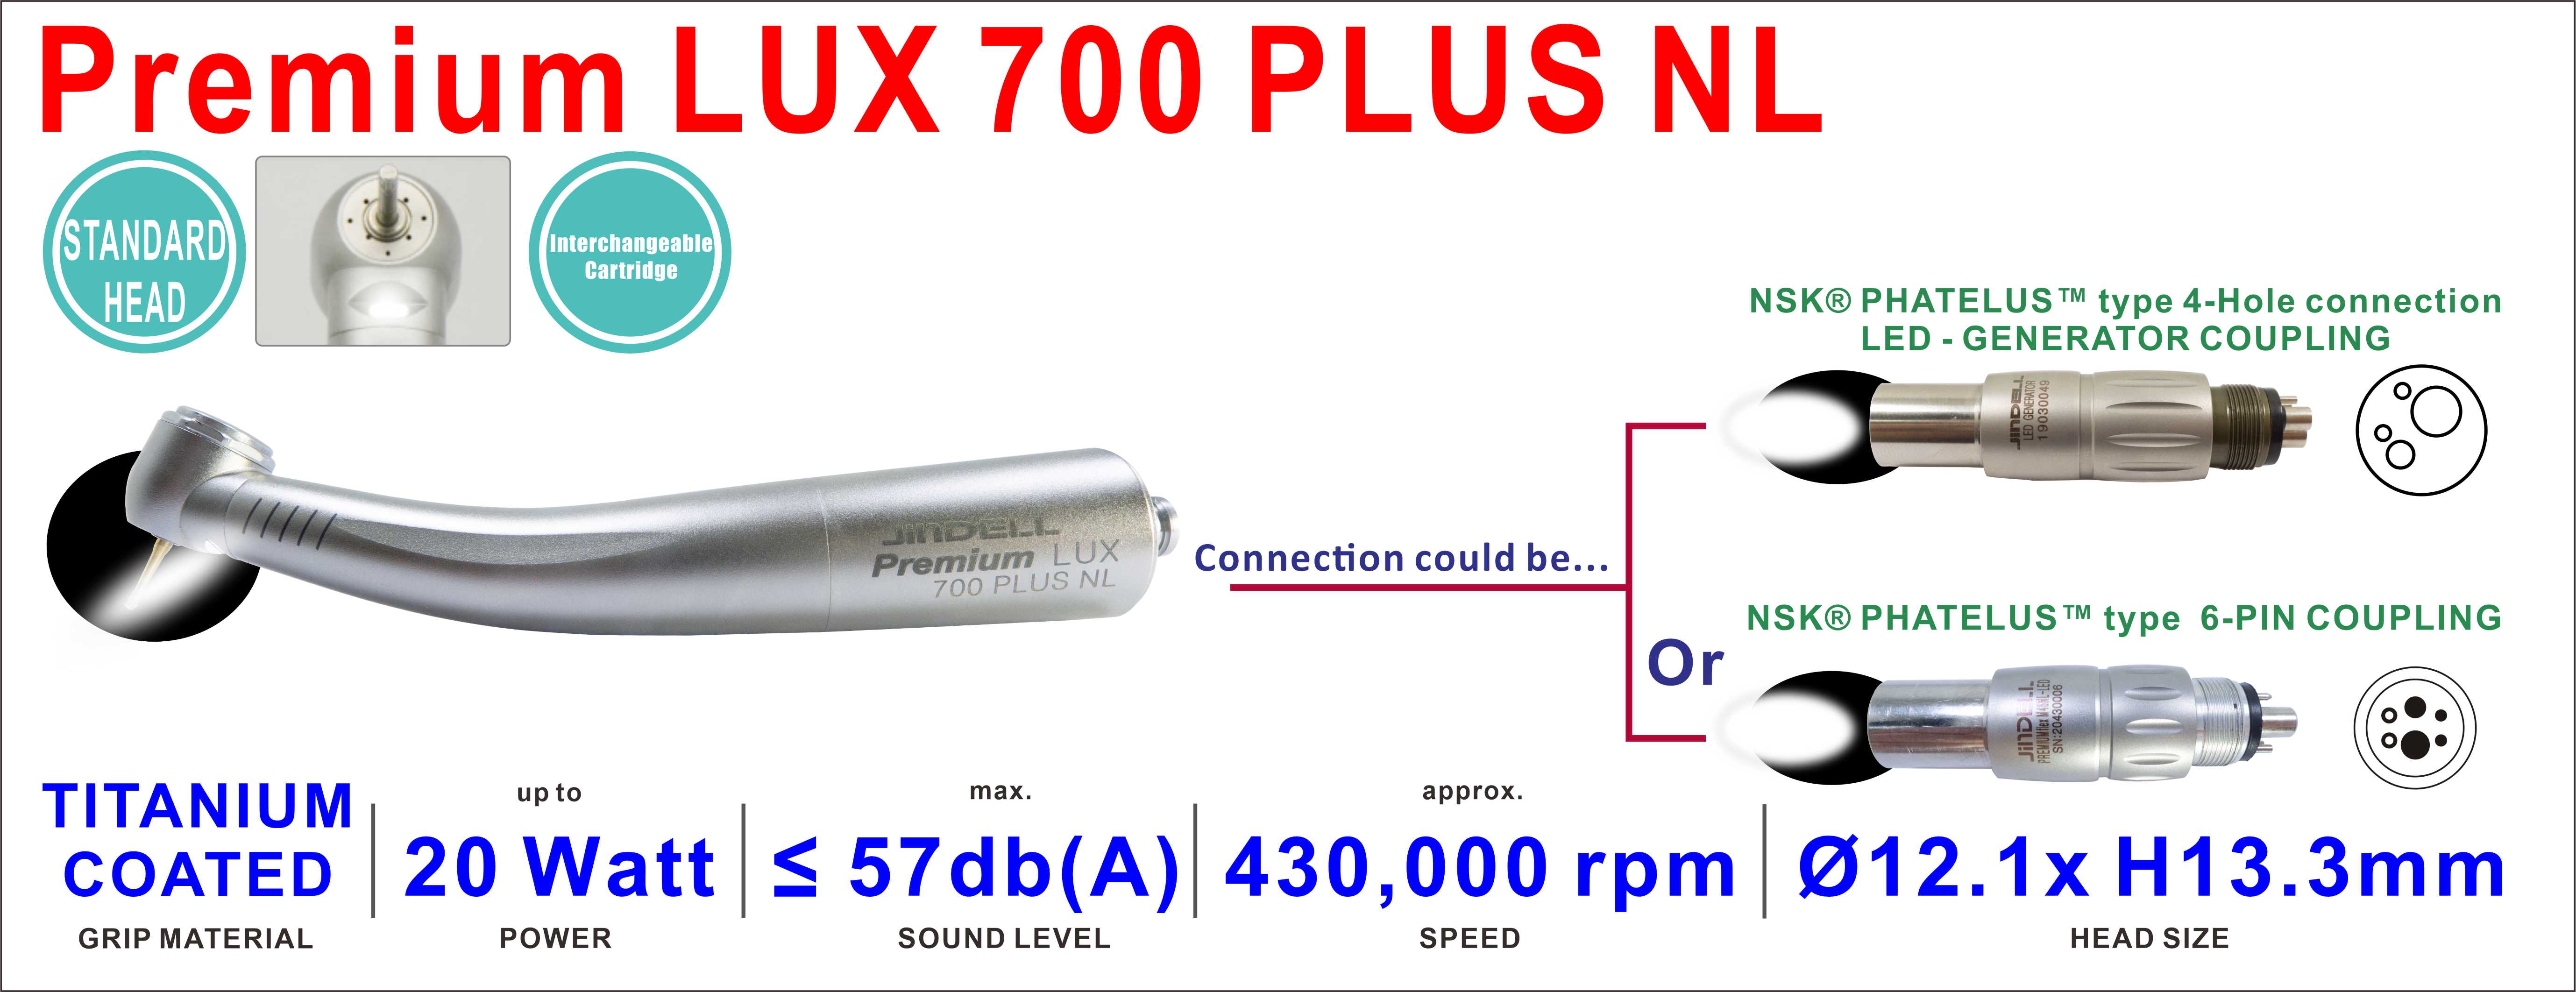 Premium LUX 700 PLUS NL